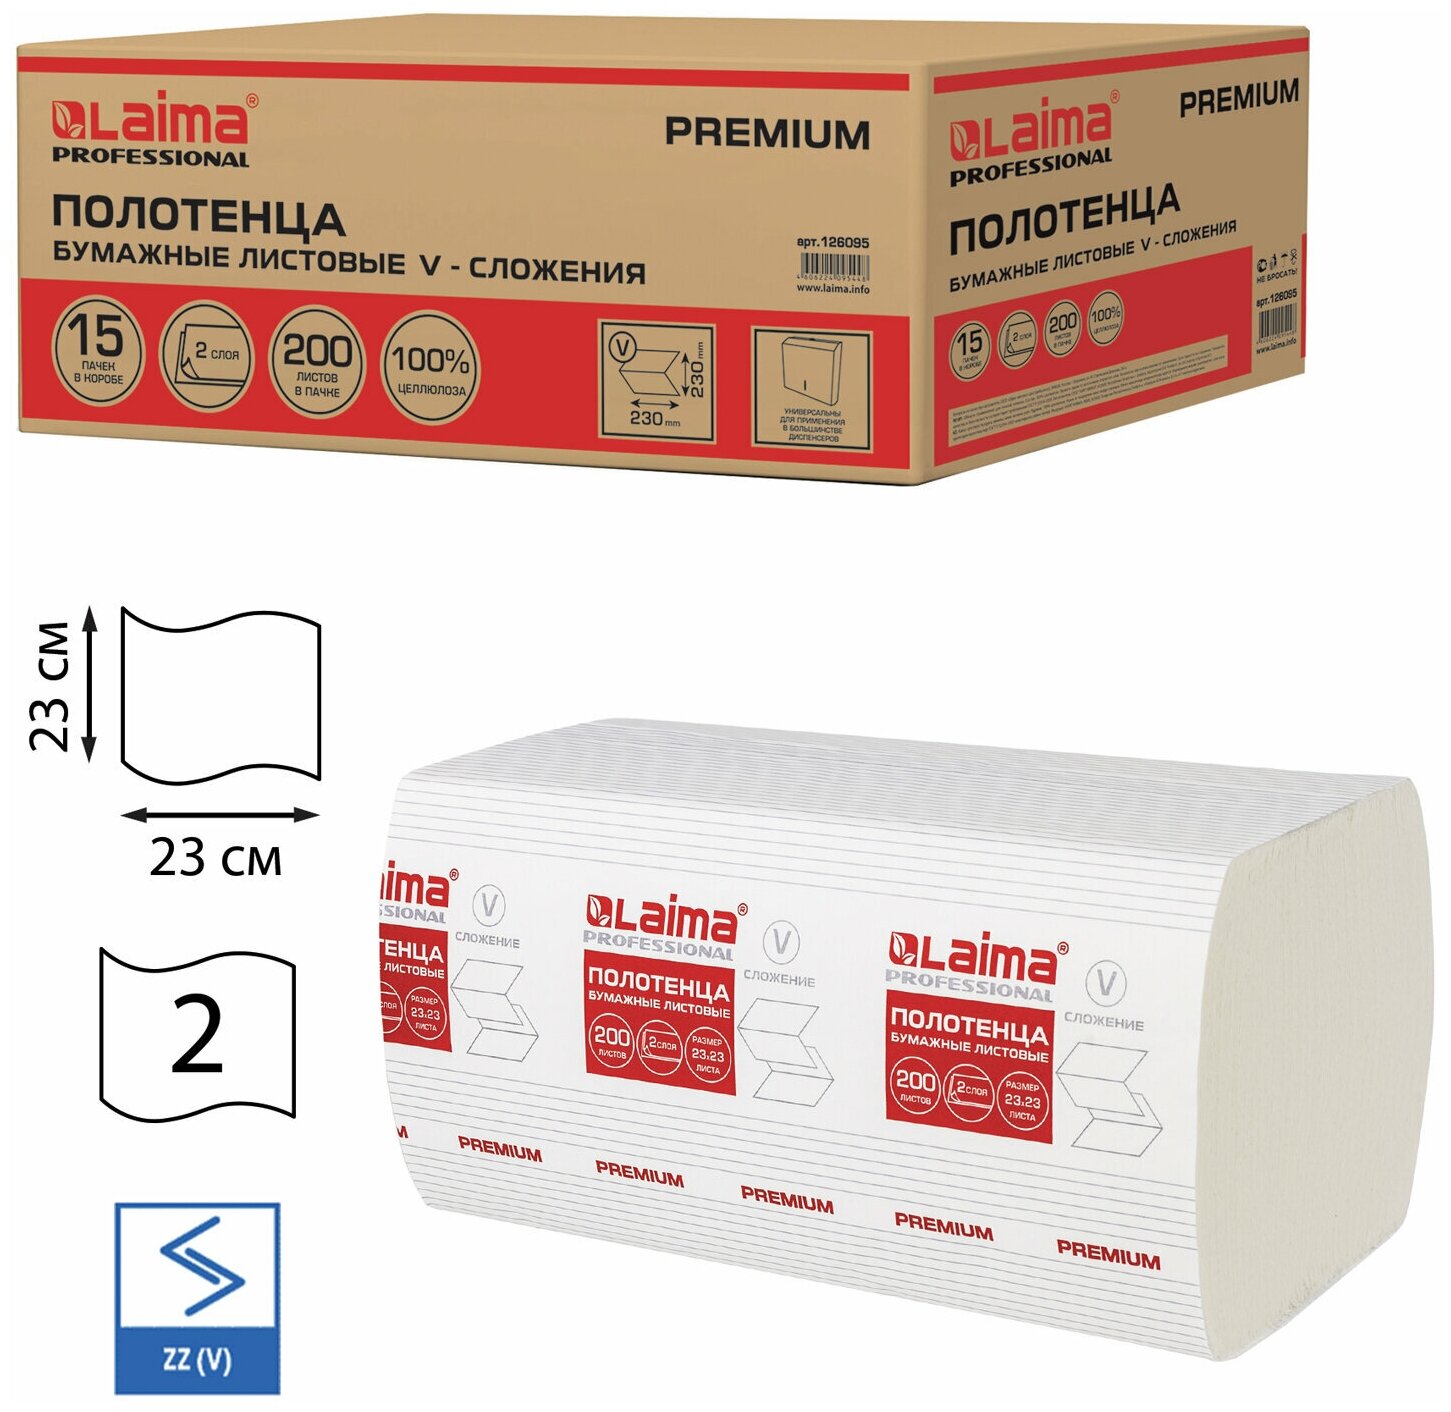 Полотенца бумажные 200 штук, LAIMA (H3) PREMIUM, 2-слойные, белые, комплект 15 пачек, 23х23, V-сложение